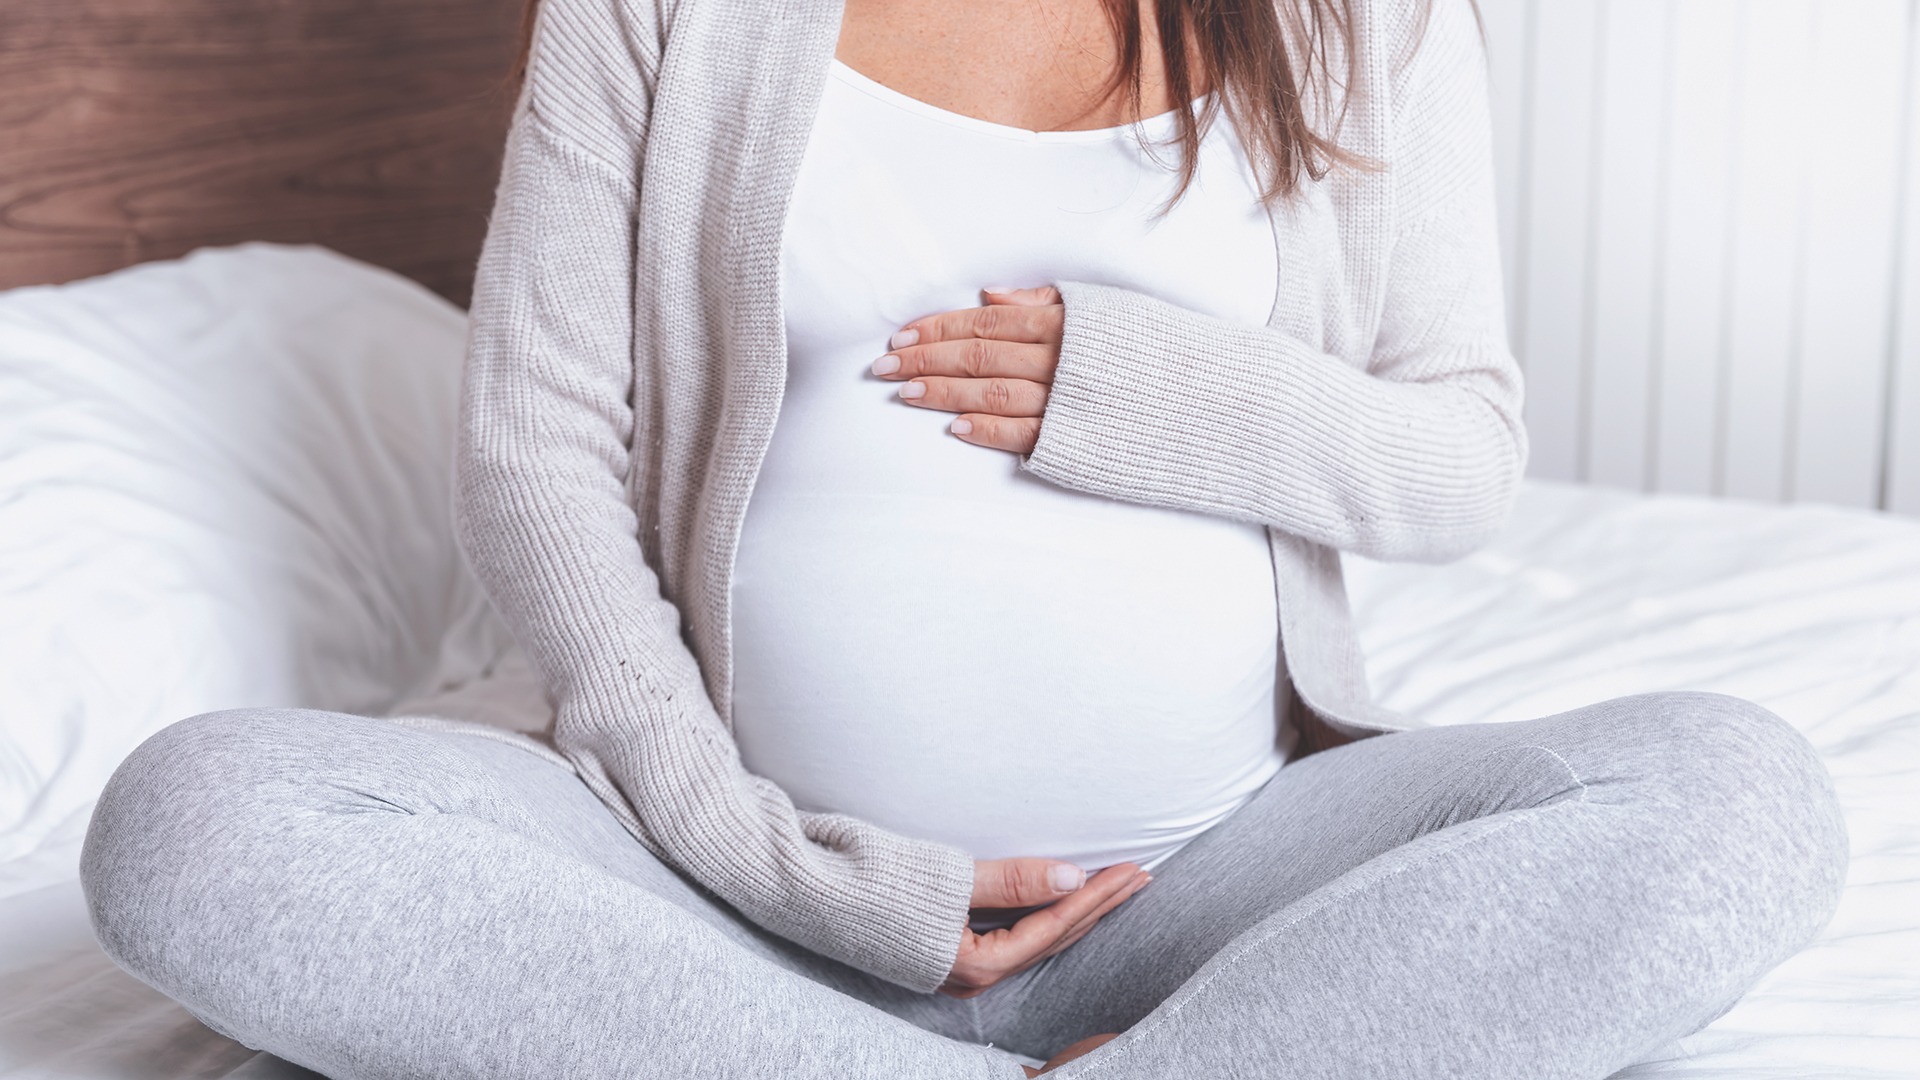 Vashiány és vérszegénység a várandósság és a szülés időszakában